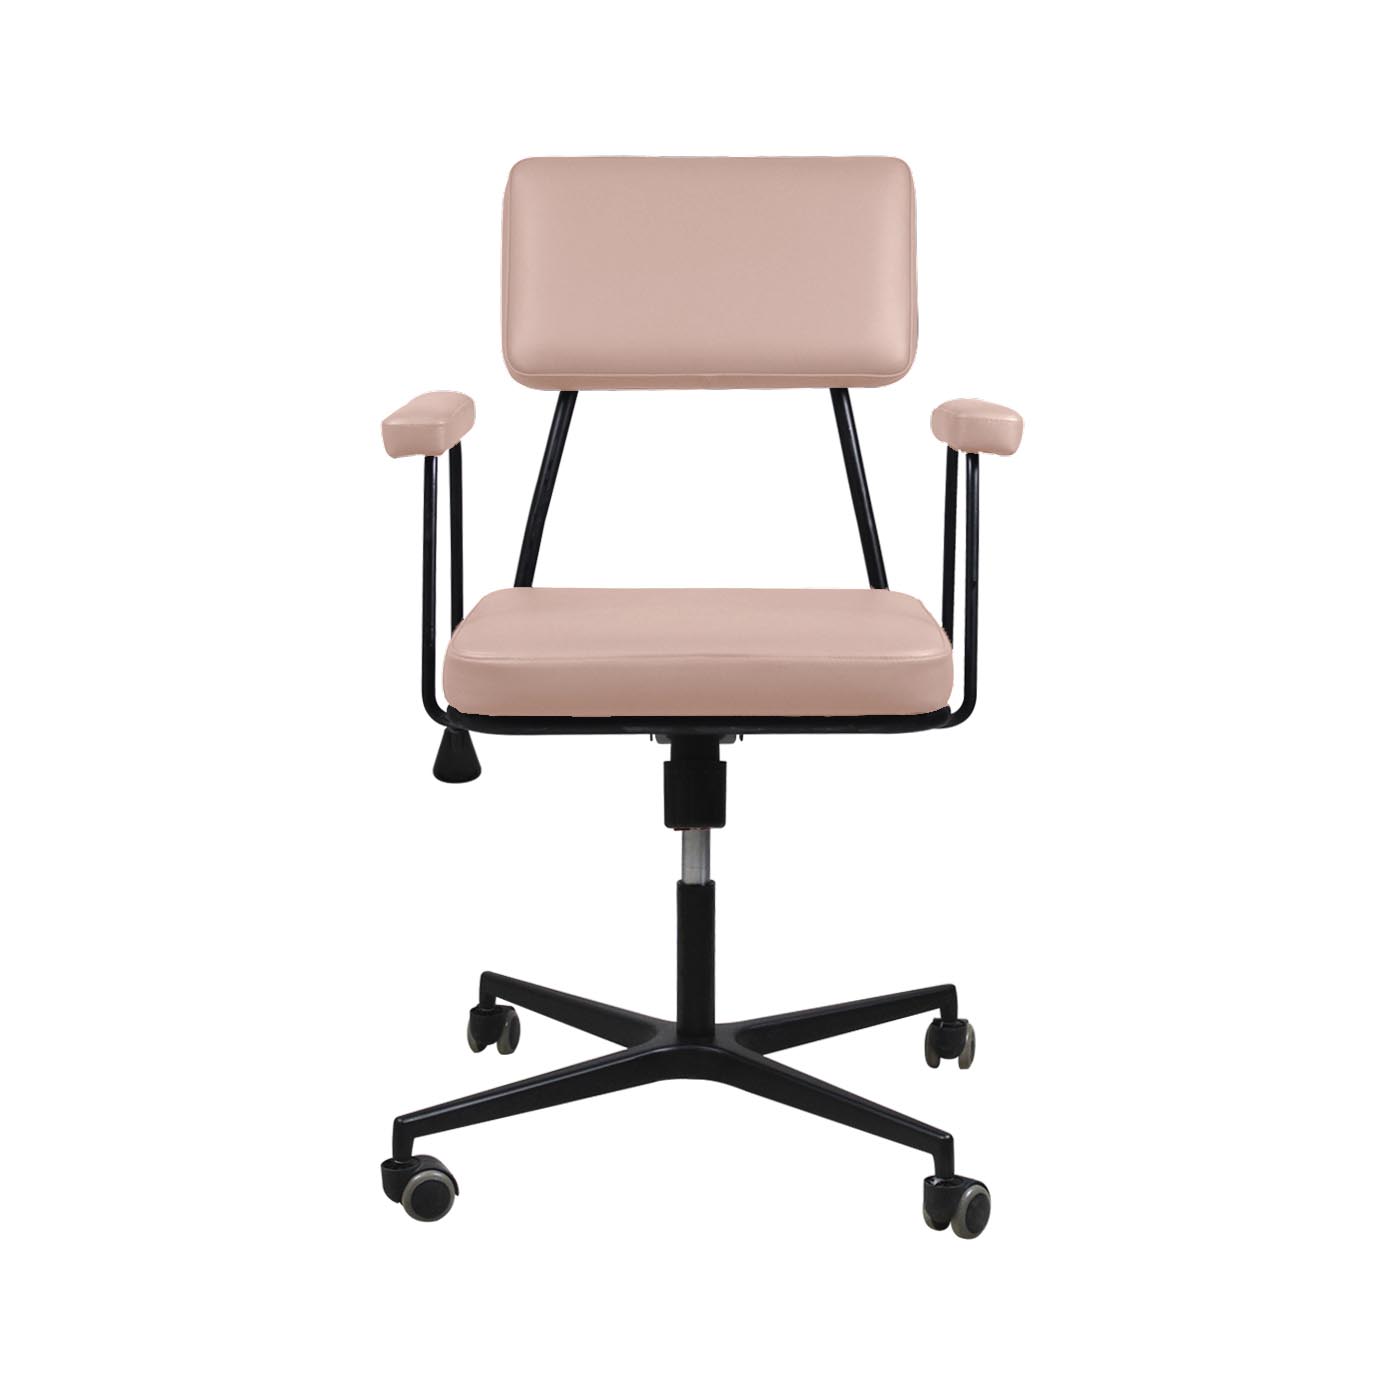 Noblitt Pale Pink Work Chair